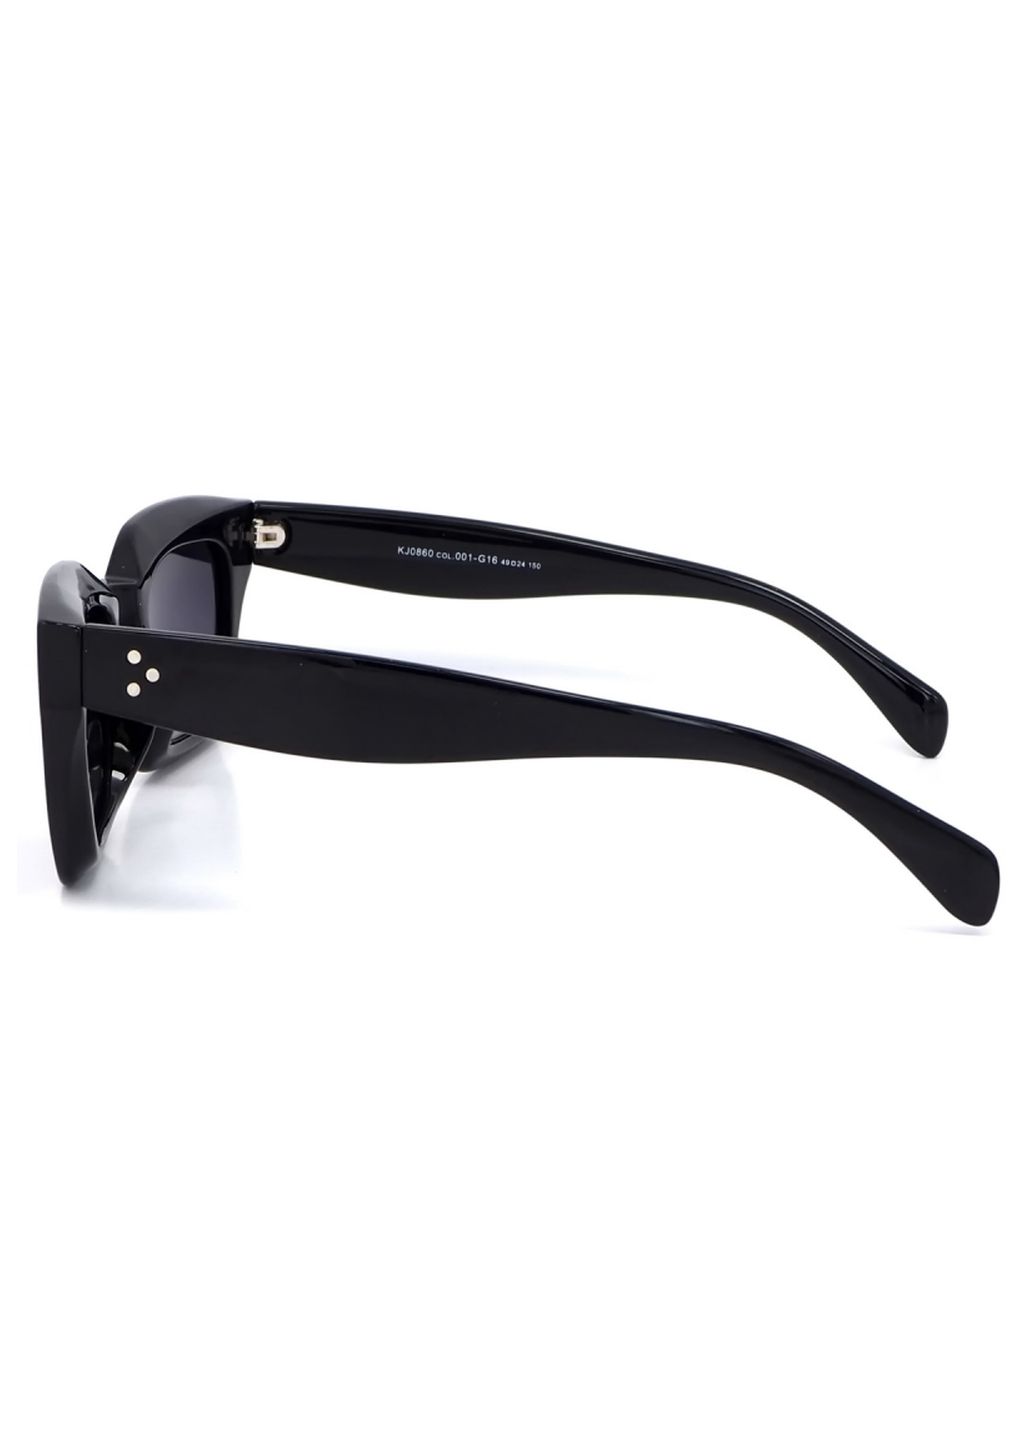 Купить Женские солнцезащитные очки Katrin Jones с поляризацией KJ0860 180043 - Черный в интернет-магазине